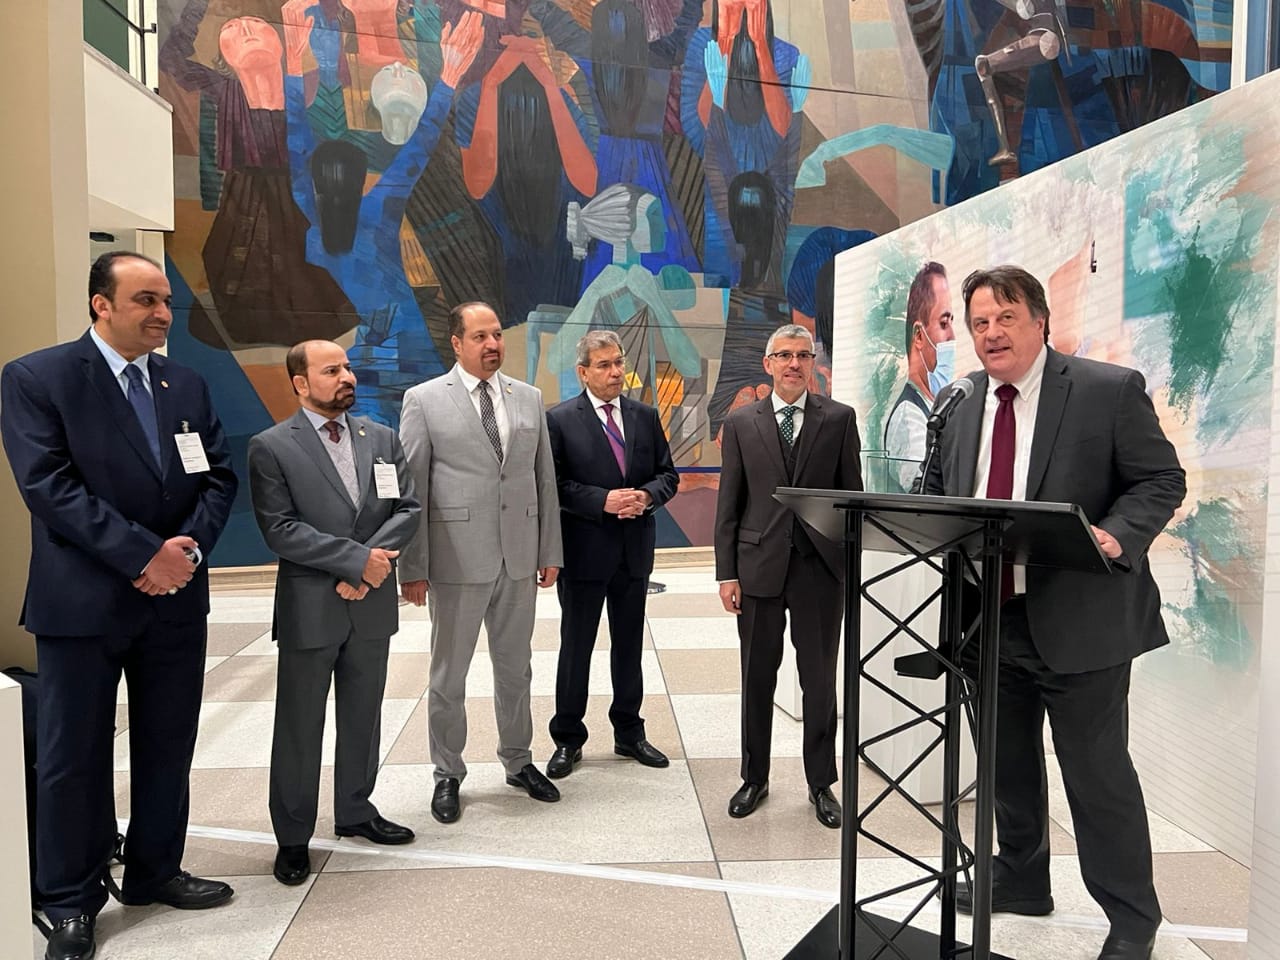 مركز الملك سلمان للإغاثة يقيم معرضا على هامش الأسبوع الإنساني بمقر الأمم المتحدة في نيويورك